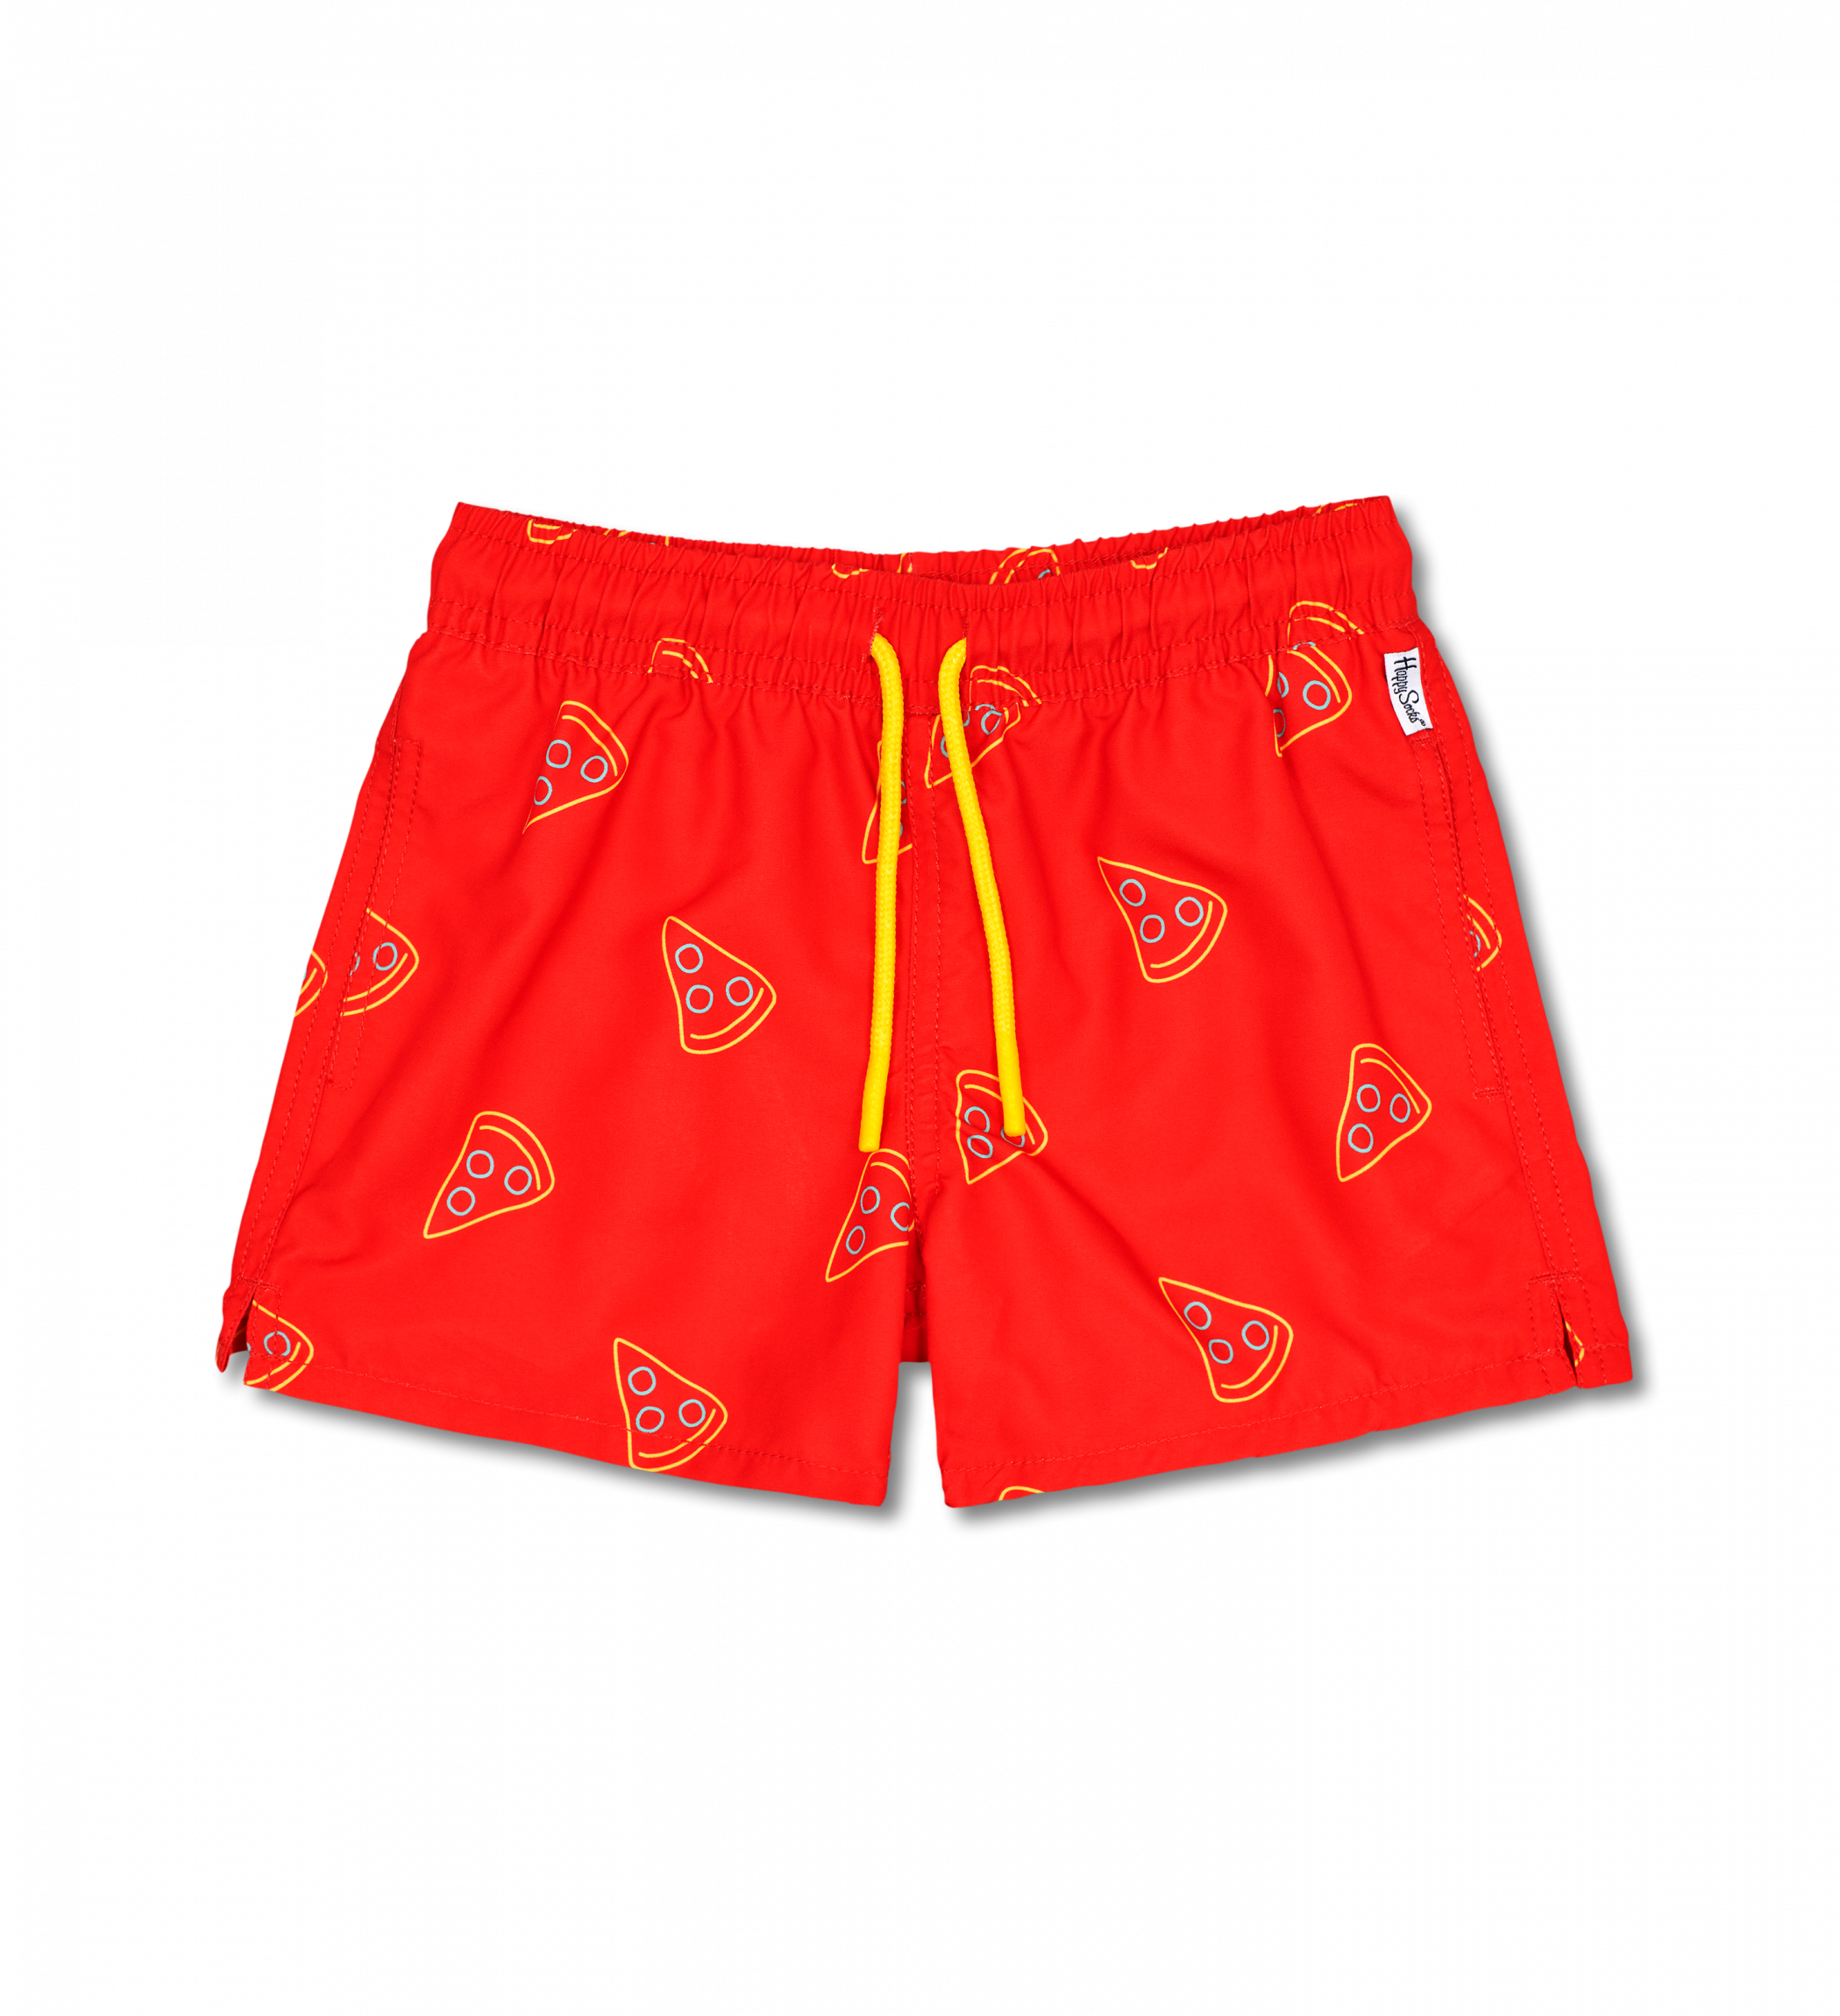 Dětské červené plavky Happy Socks, vzor Pizza Slice